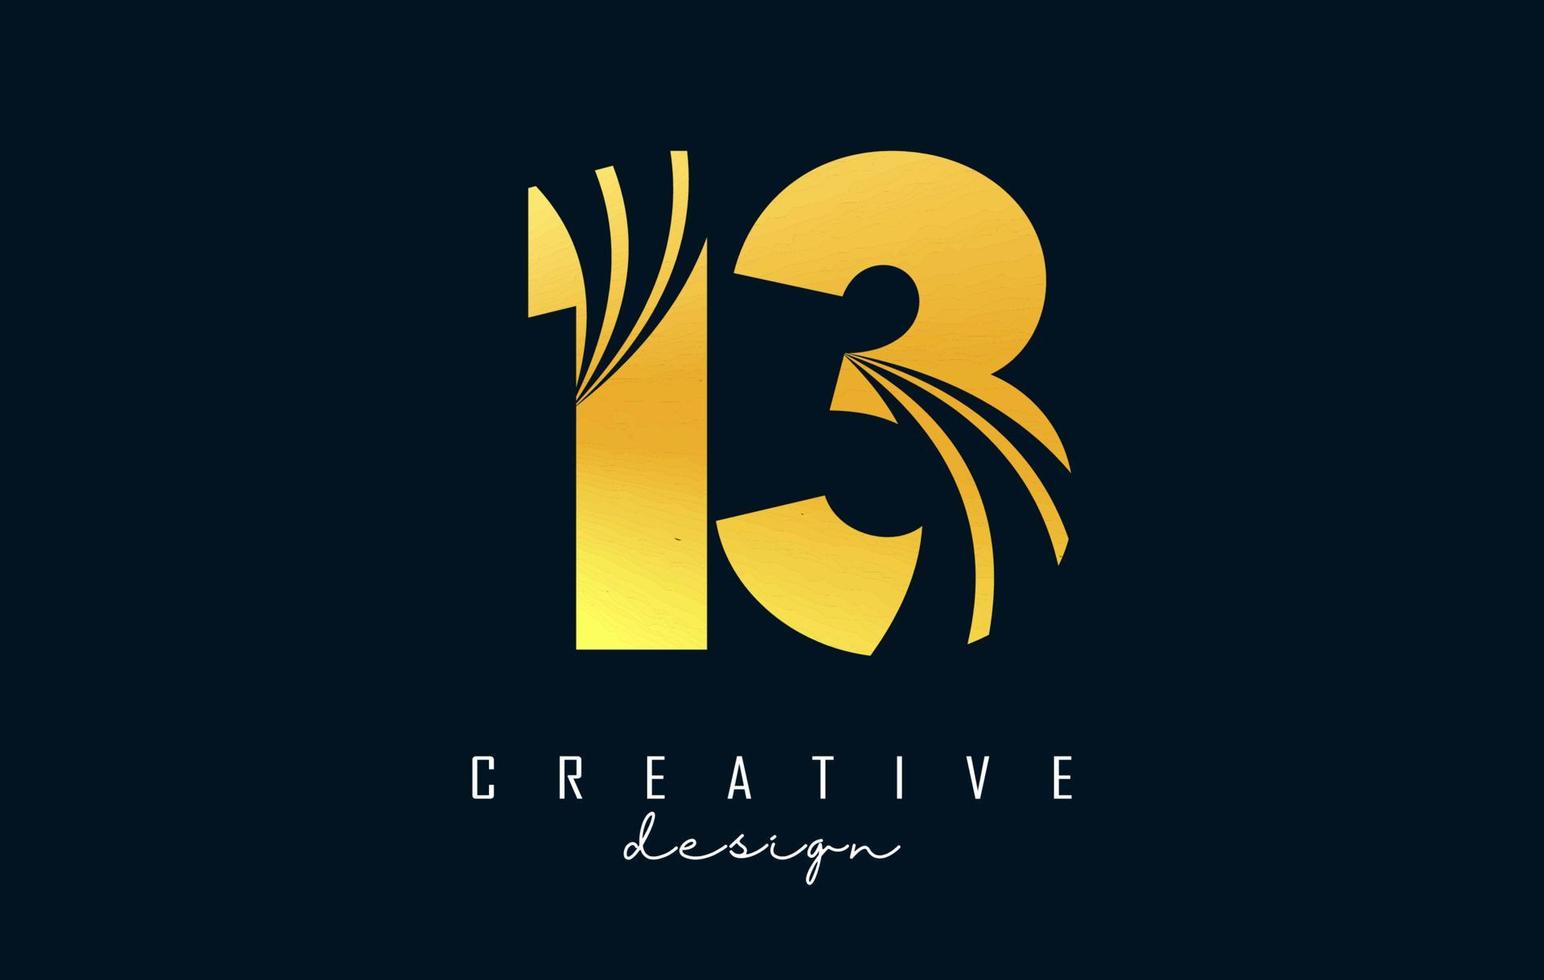 goldenes kreatives nummer 13 1 3 logo mit führenden linien und straßenkonzeptdesign. Nummer mit geometrischem Design. vektor